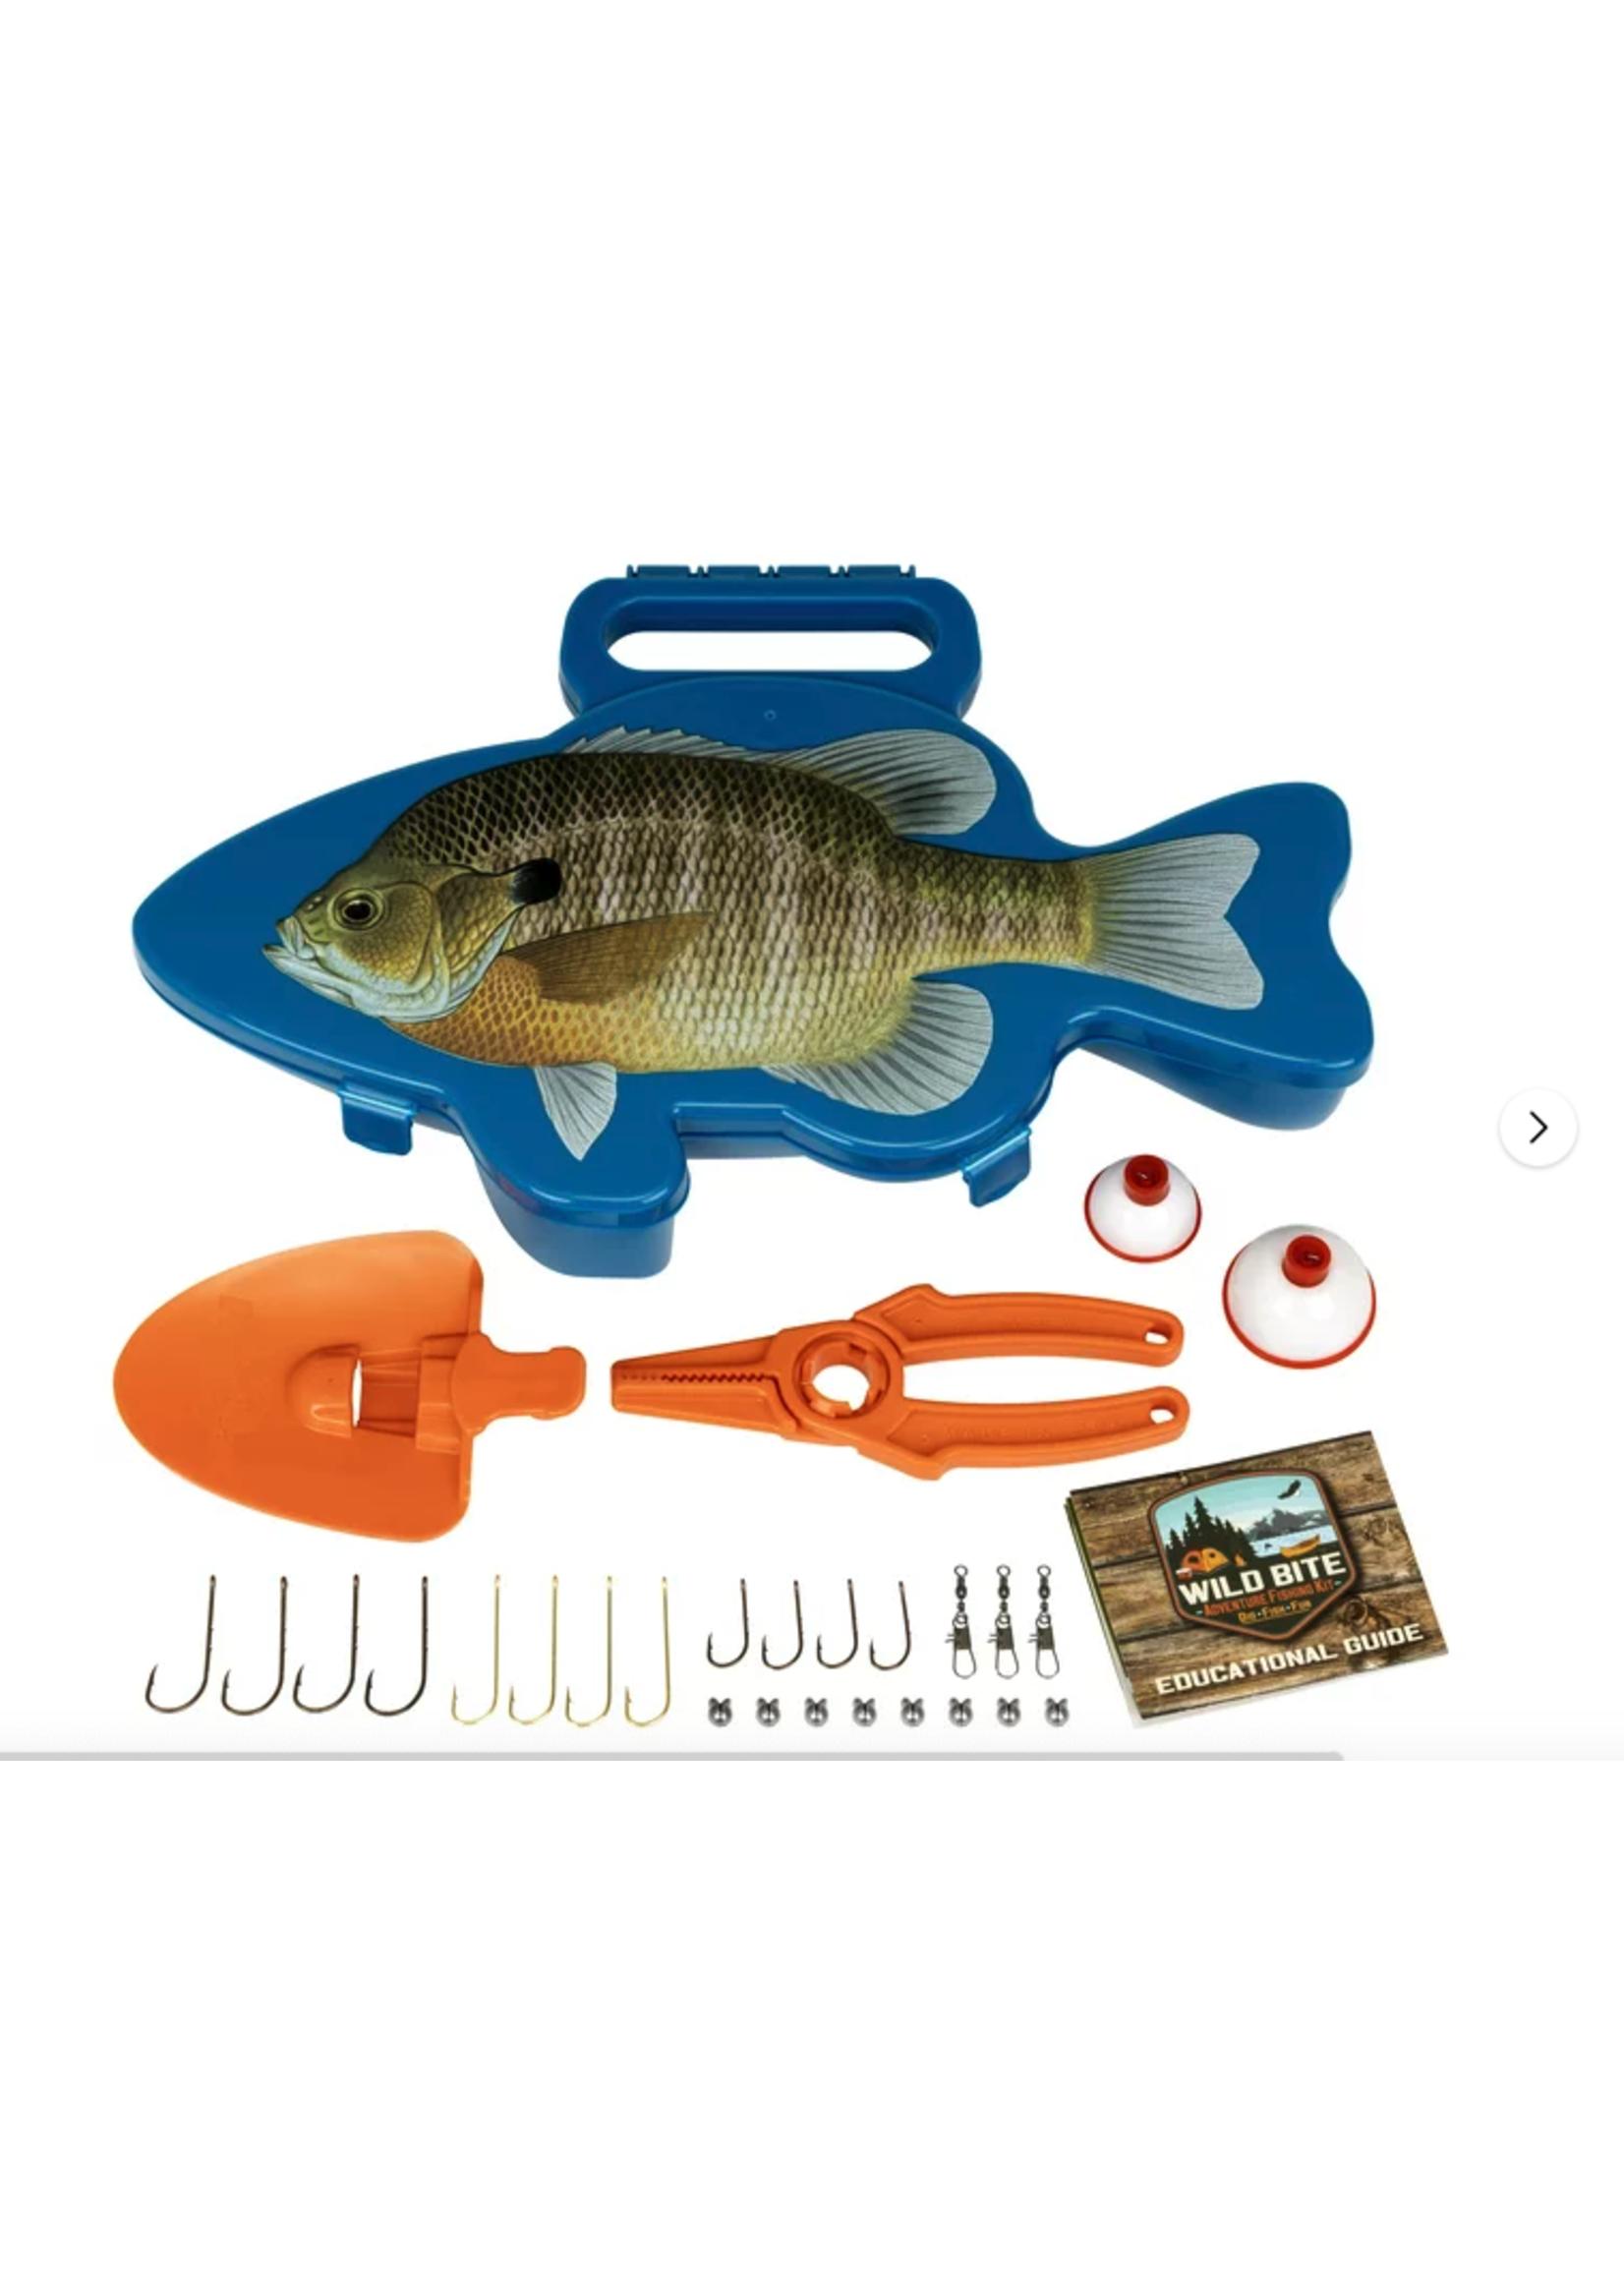 Flambeau Wild Bite Adventure Fishing Kit